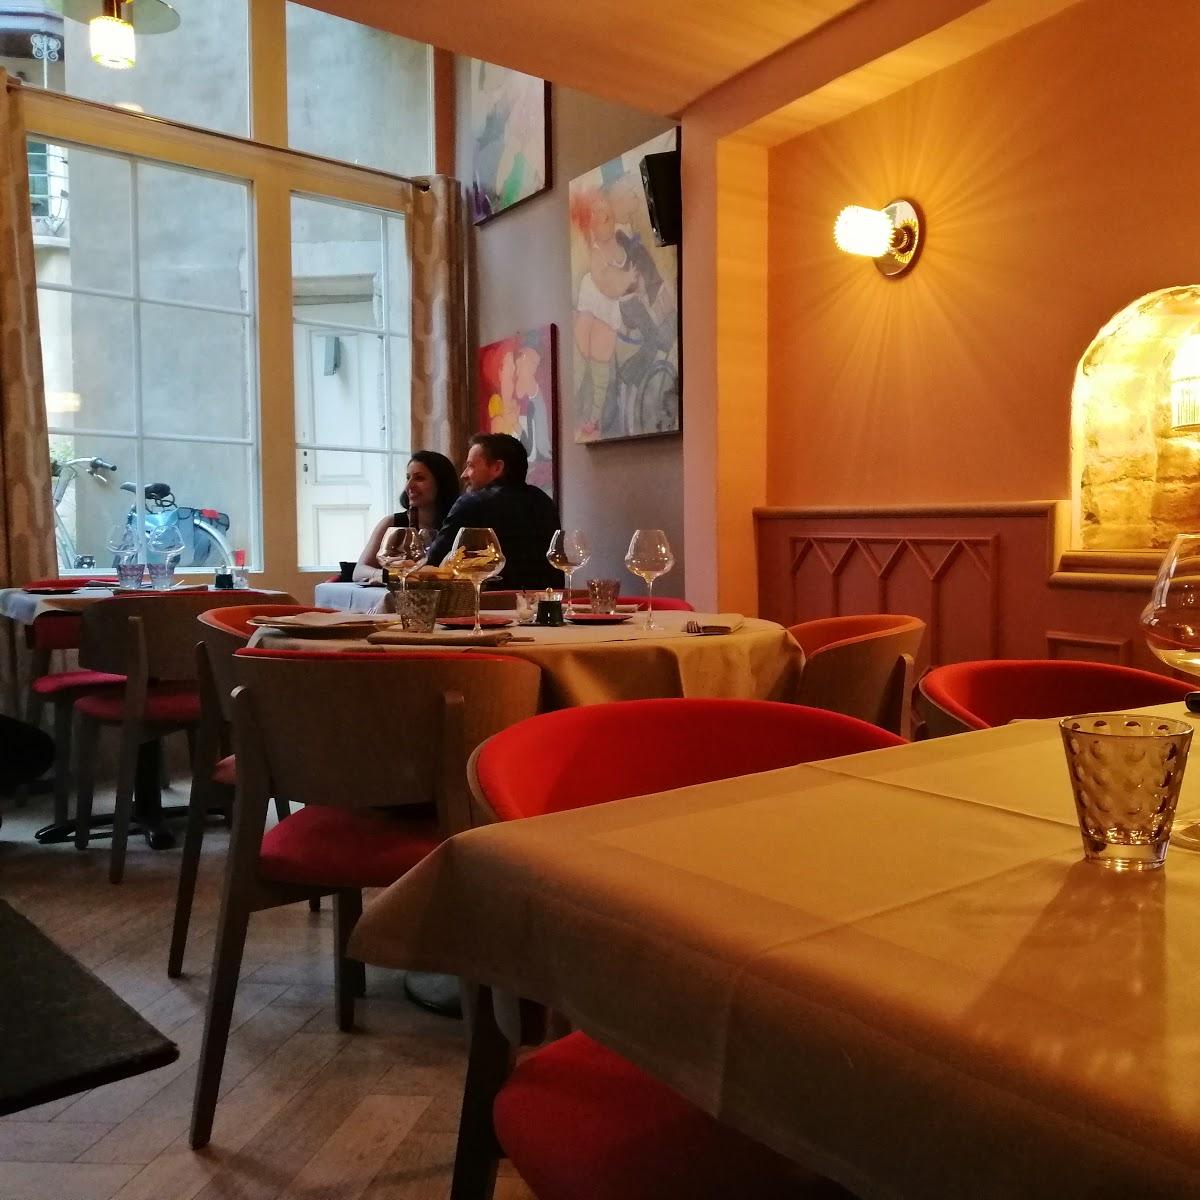 Restaurant "Perles de Saveurs" in Strasbourg